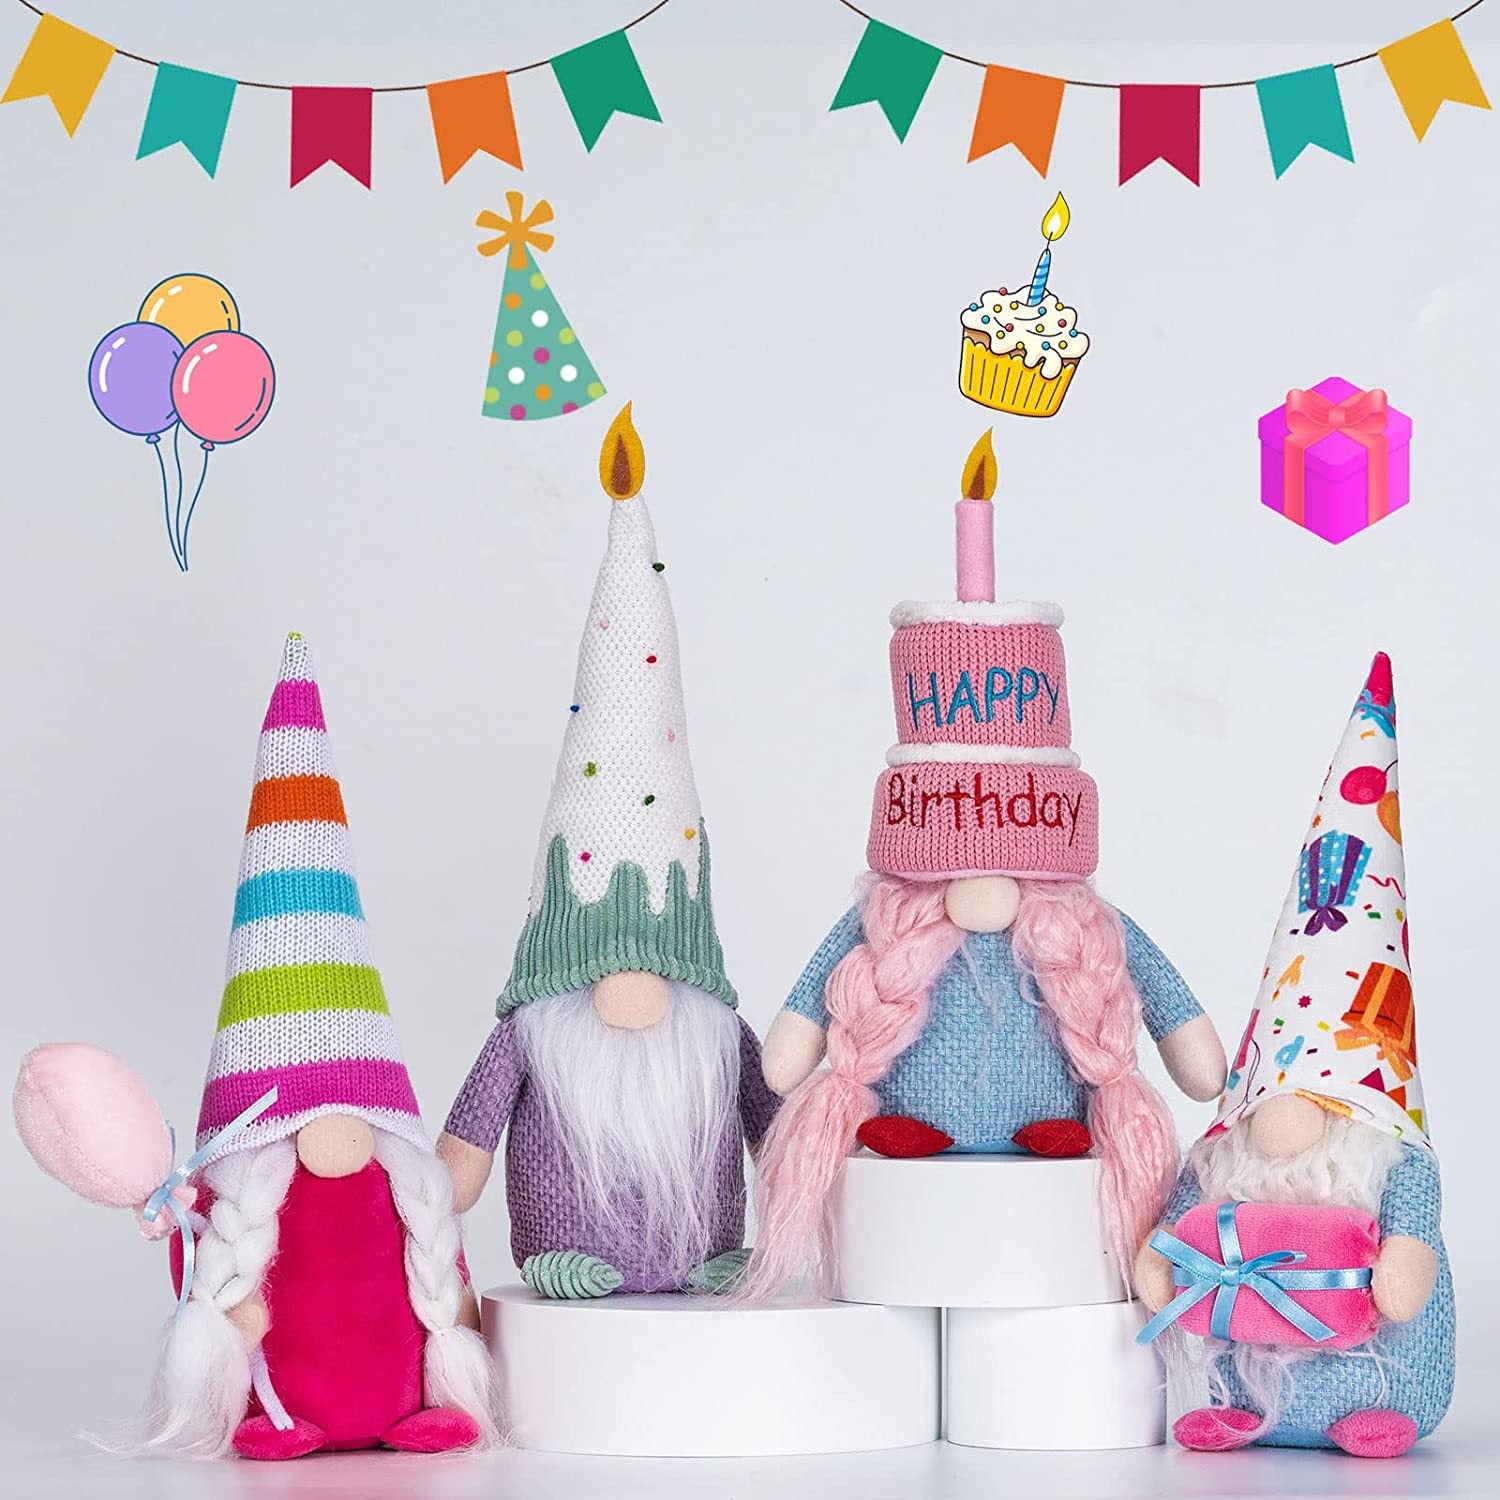 Happy birthday cake gnomes